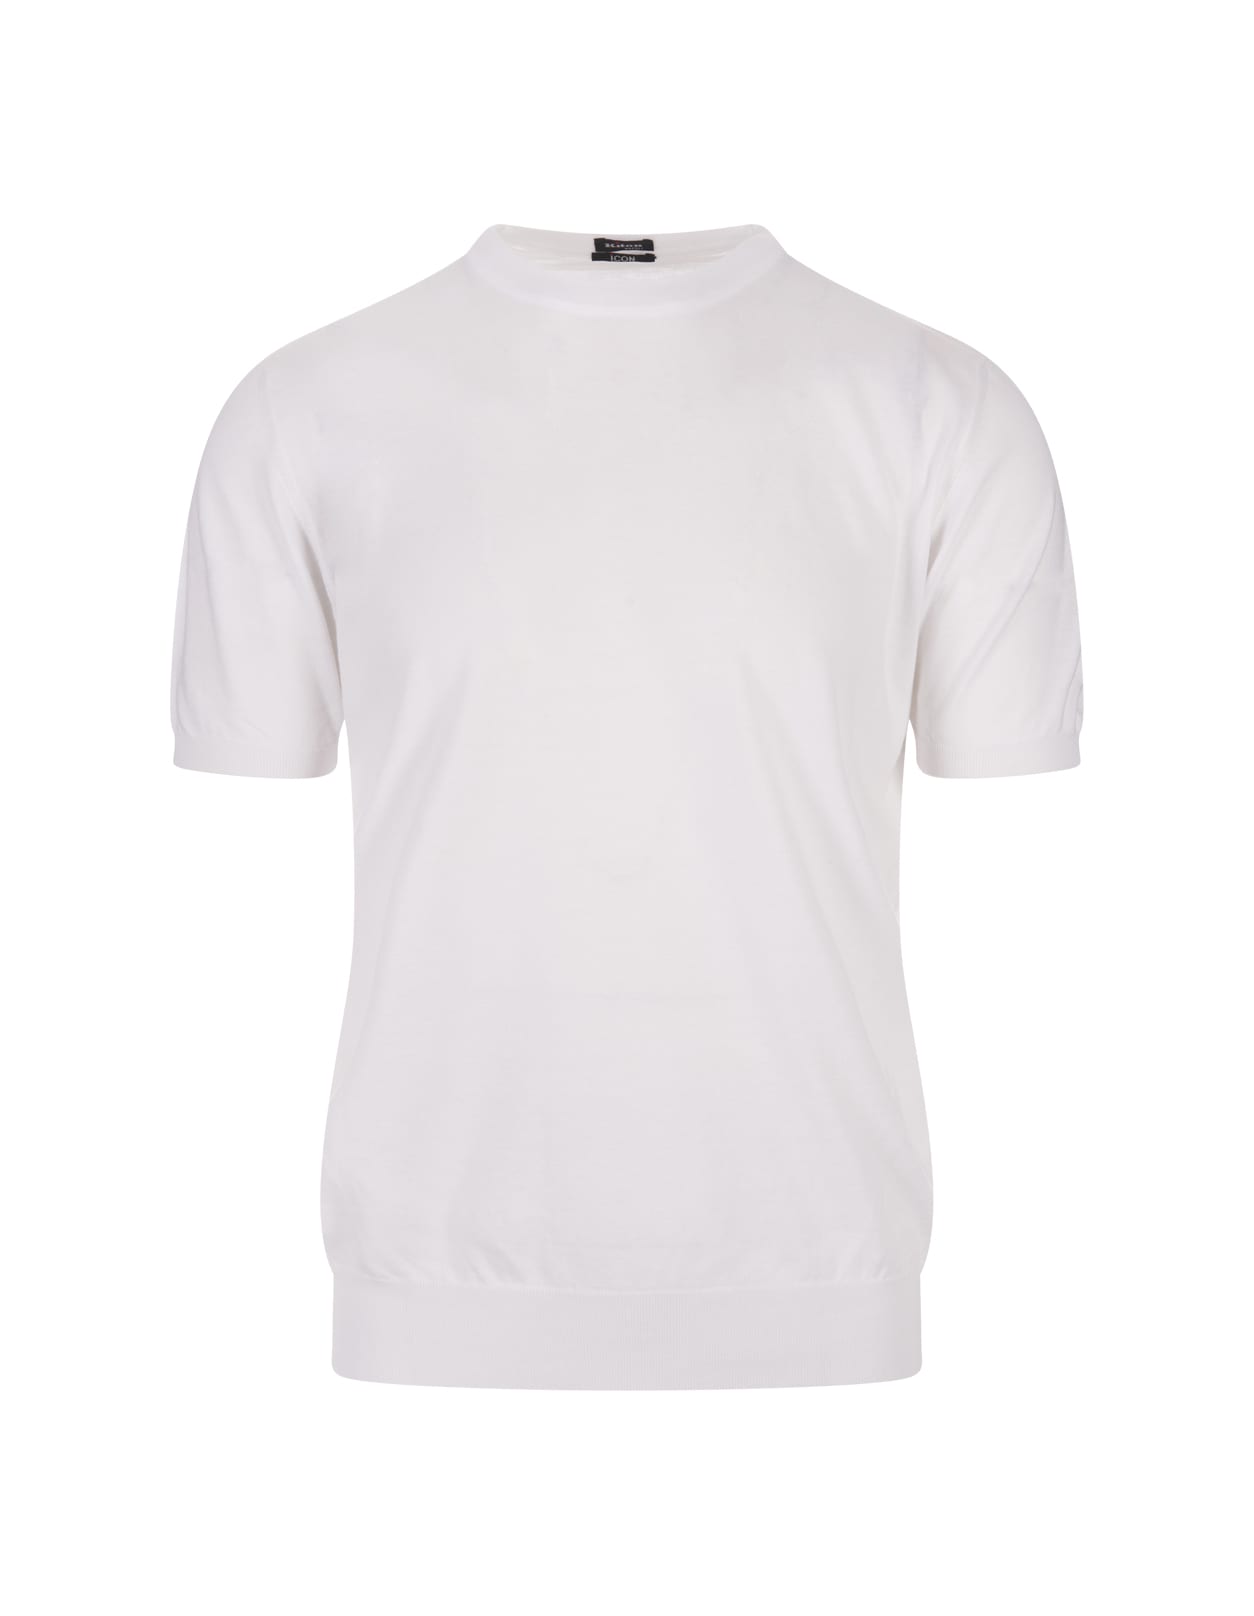 White Cotton Knit T-shirt